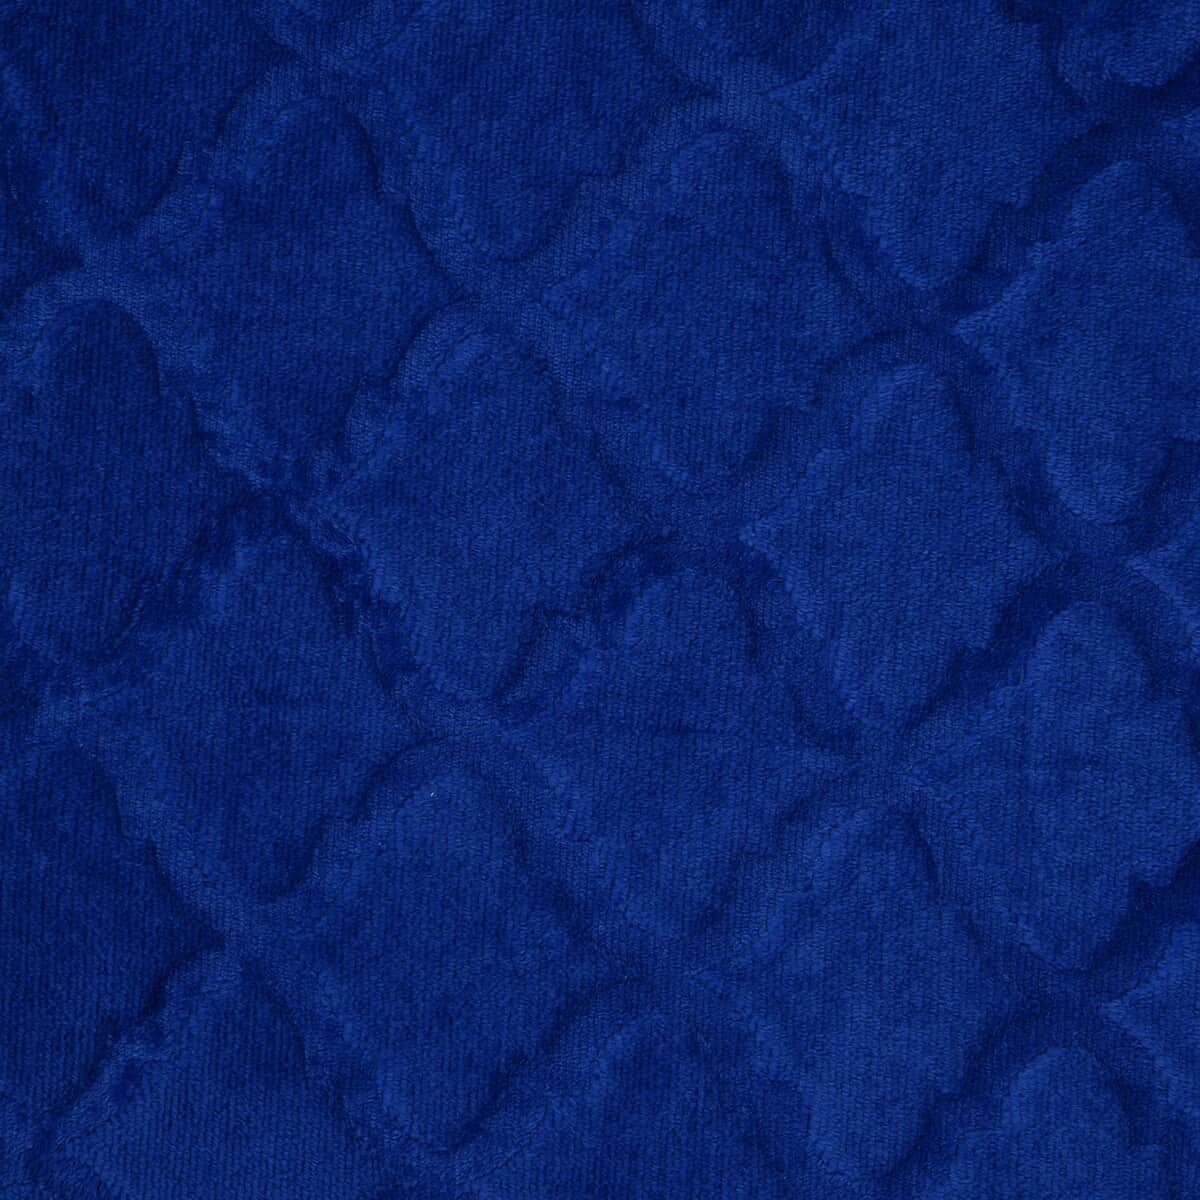 Homesmart Solid Blue Microfiber Brushed Flannel Sherpa Blanket image number 4